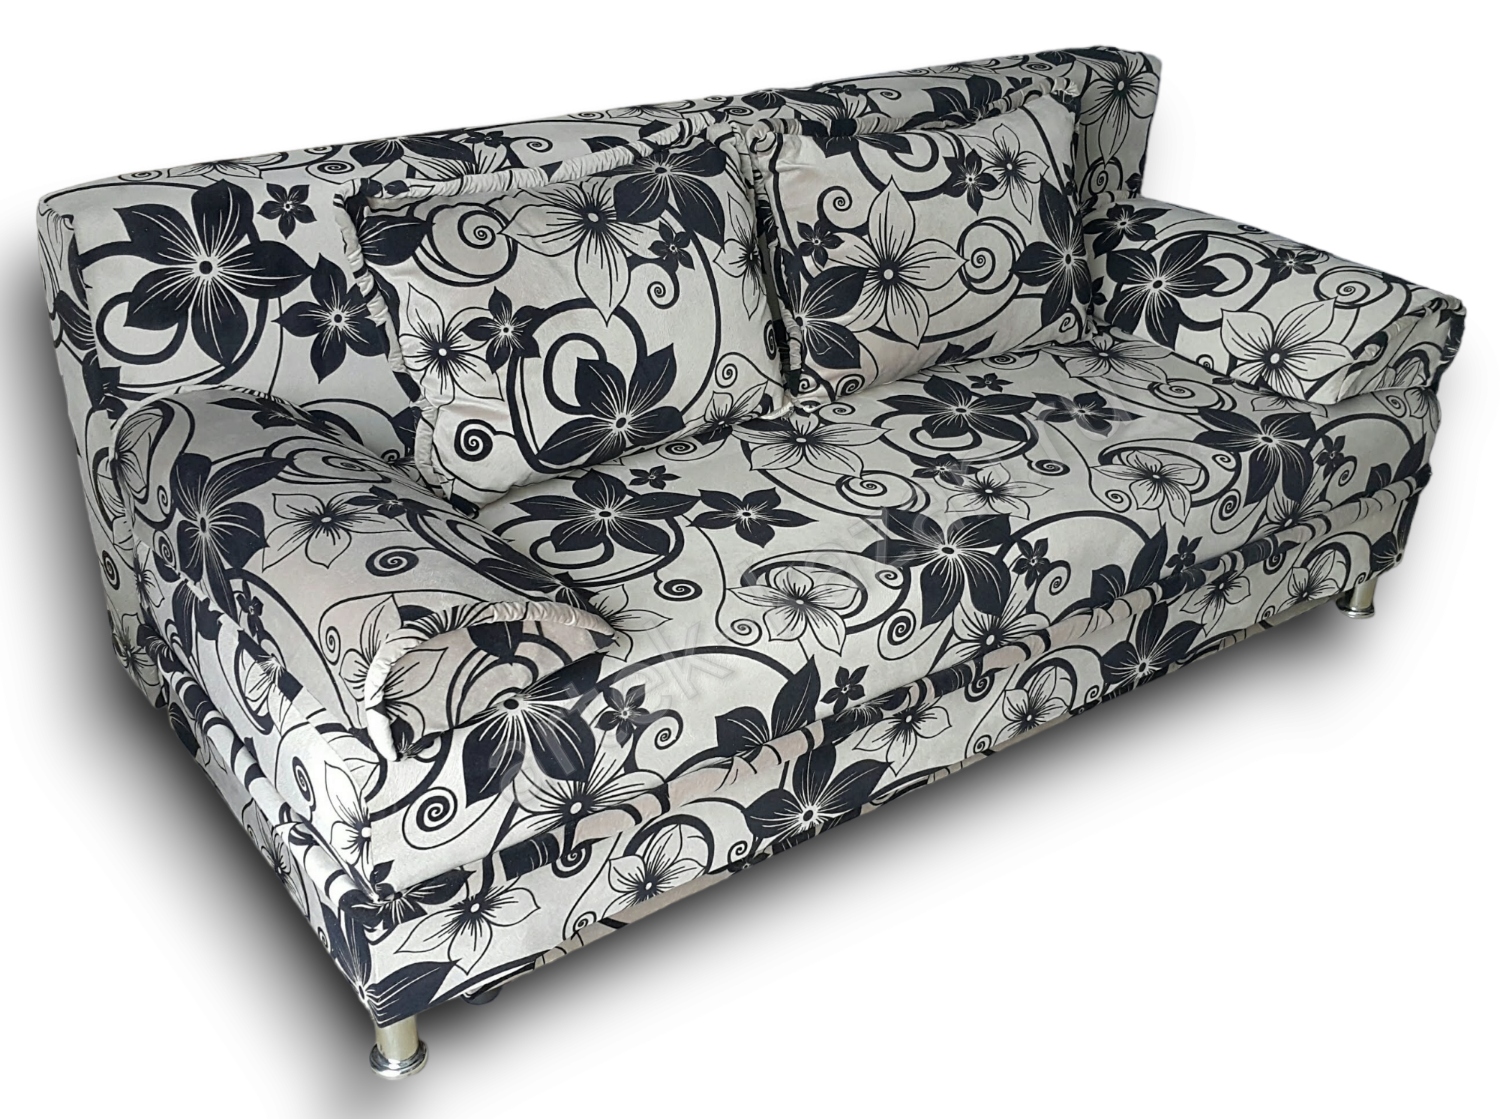 диван еврокнижка Эконом фото № 10. Купить недорогой диван по низкой цене от производителя можно у нас.